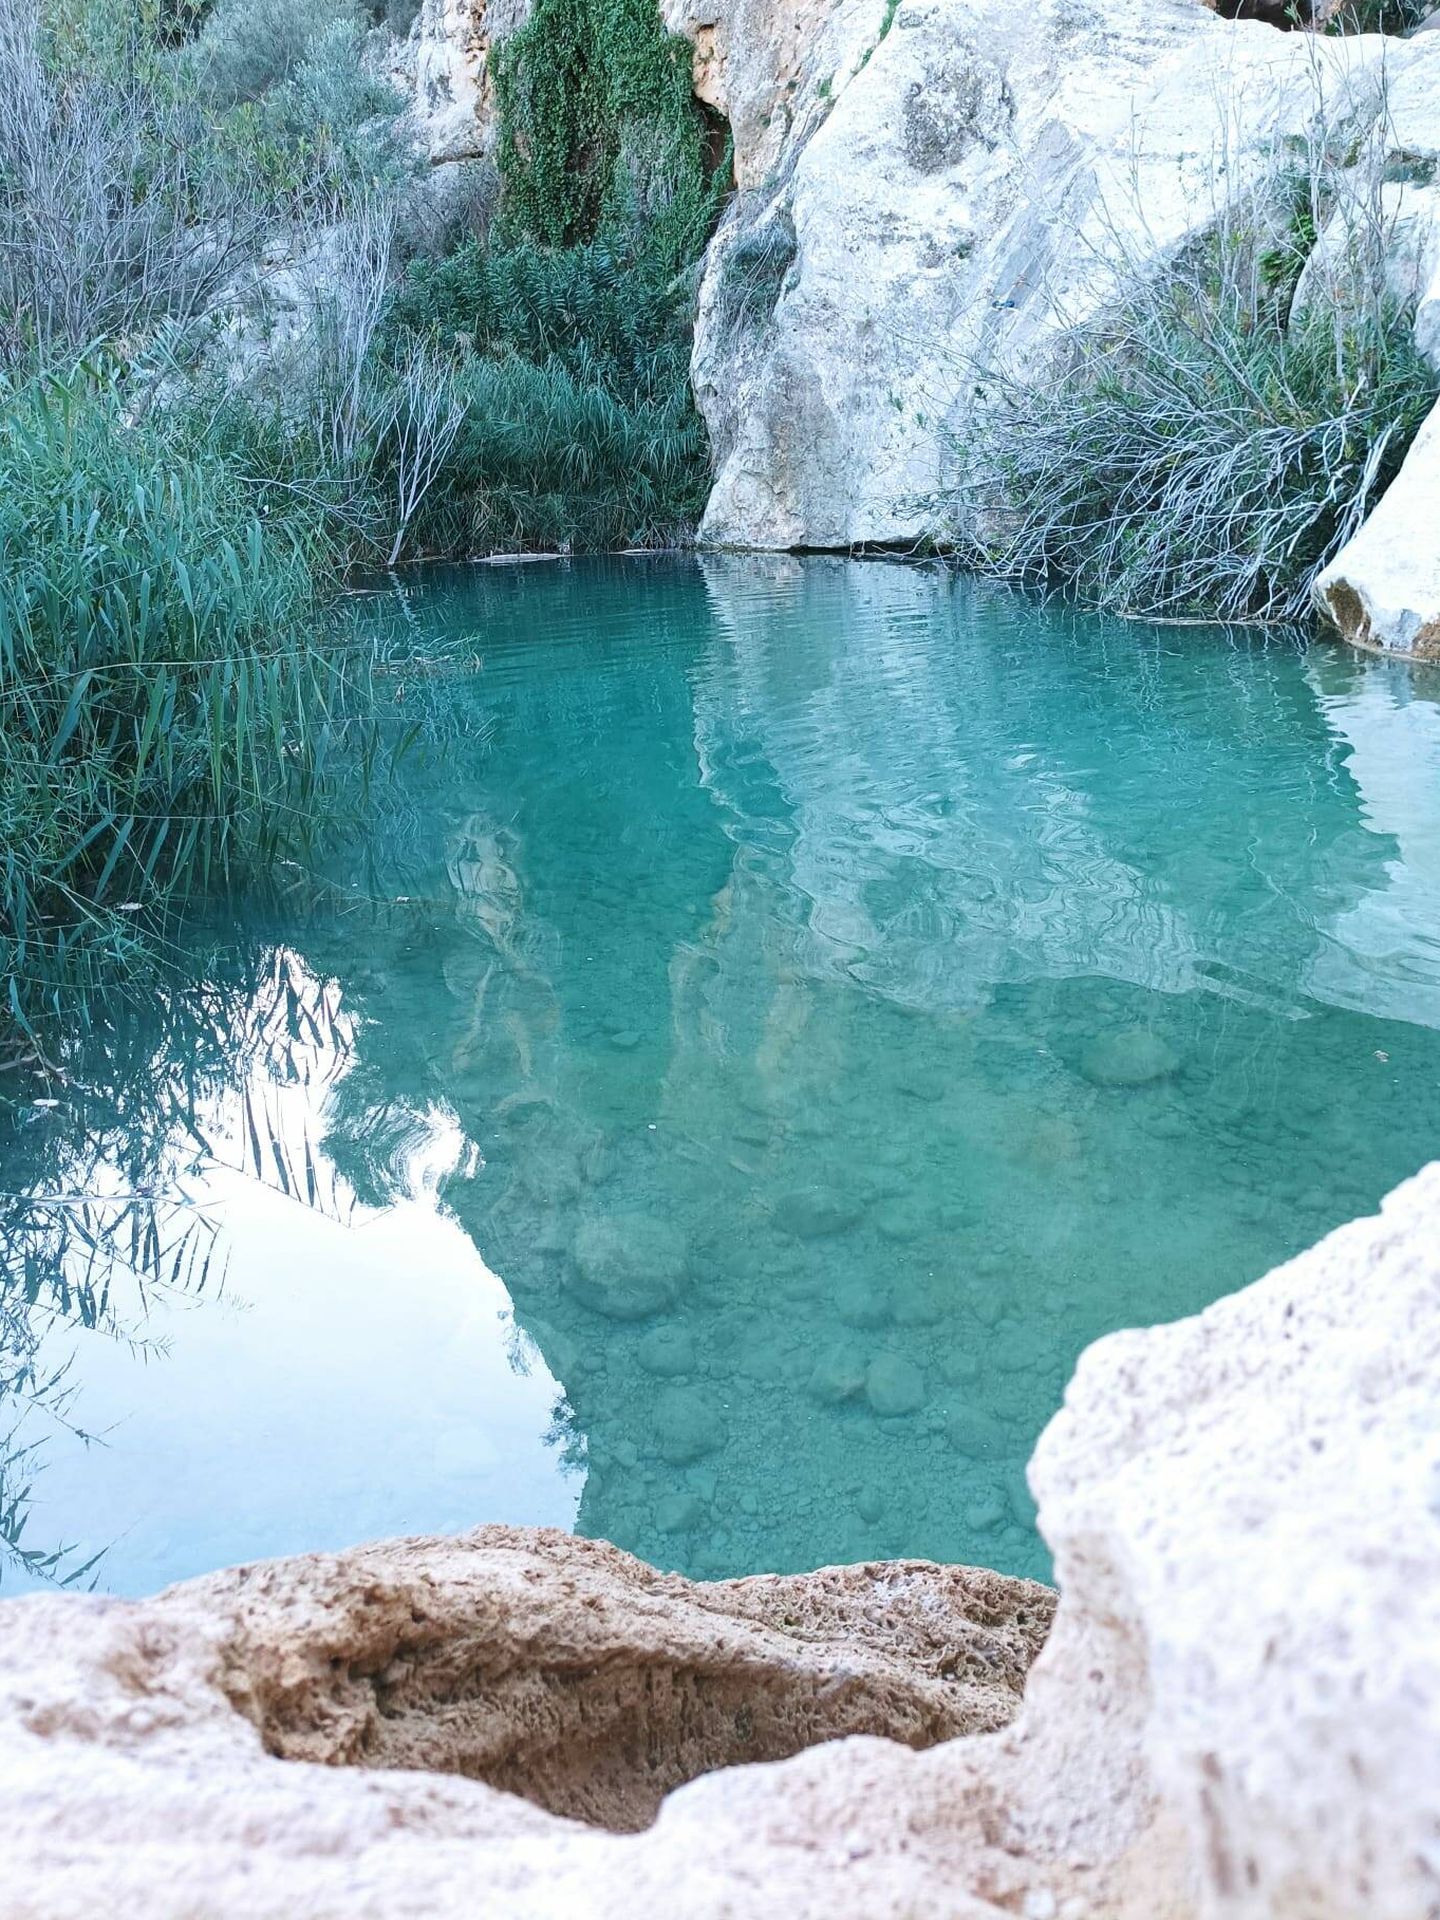 La Cueva de las Palomas alberga esta preciosa charca (Foto: Juan M. Belinchón)